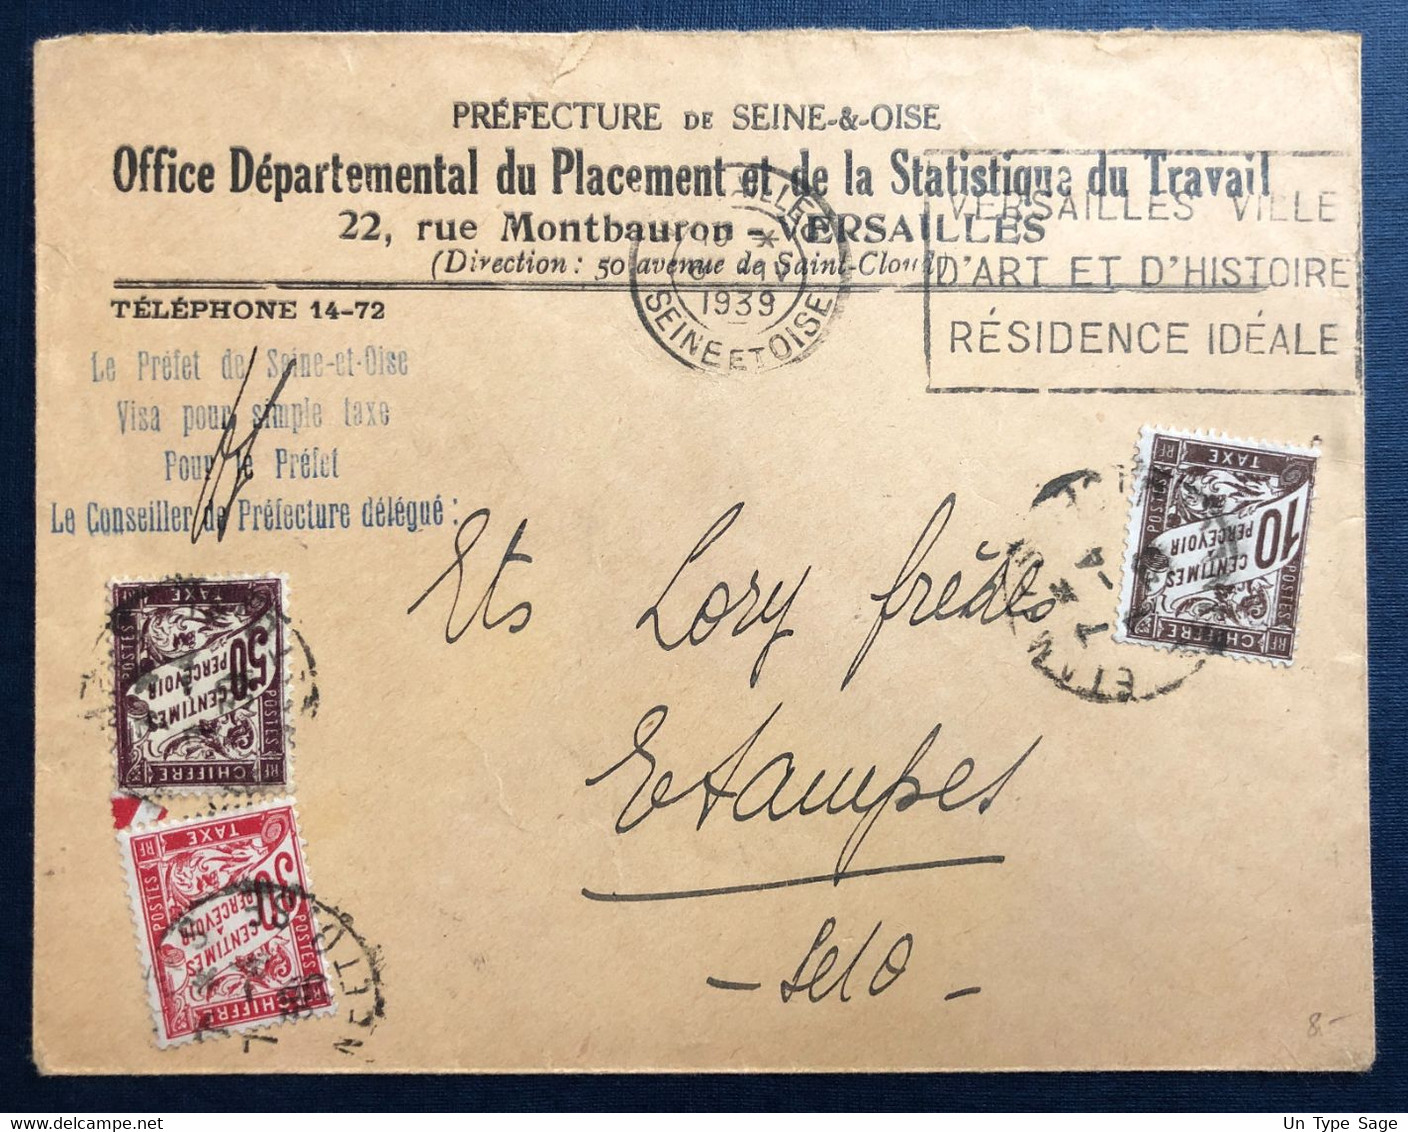 France Taxe Sur Enveloppe De Versailles 6.4.1939 - (B4493) - 1859-1959 Brieven & Documenten